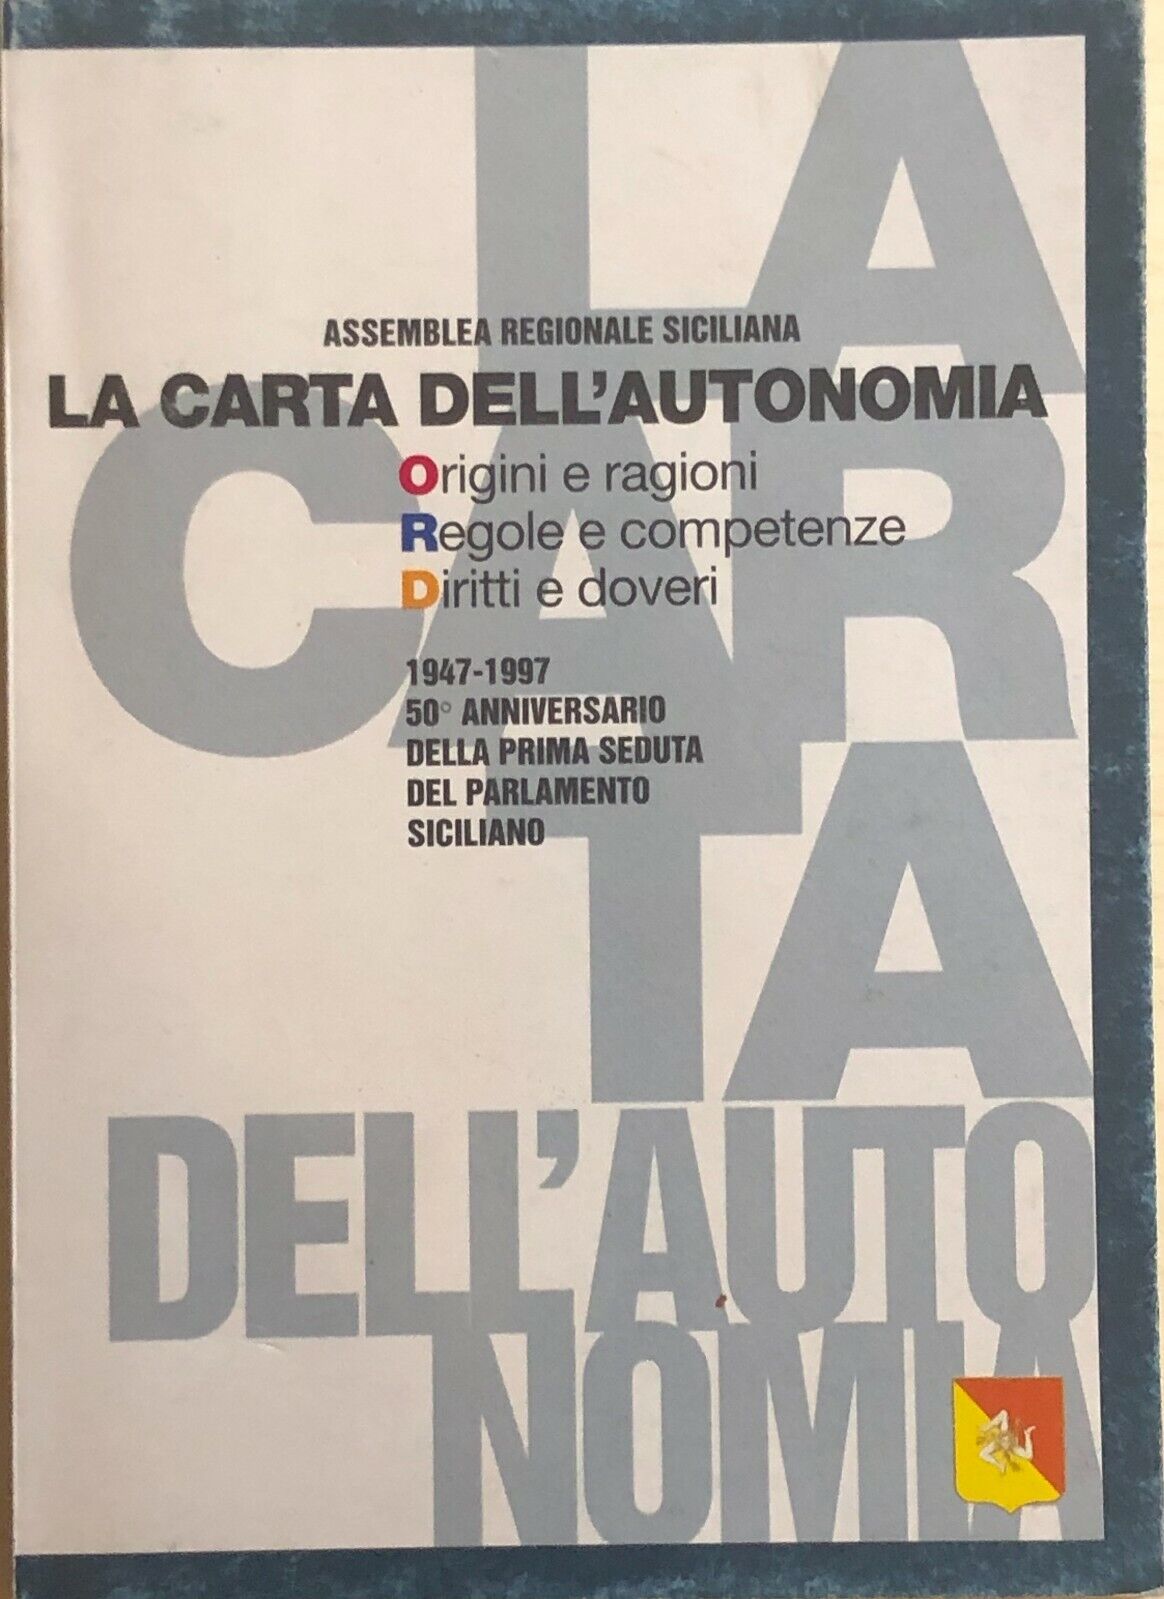 La carta delL'autonomia di Assemblea Regionale Siciliana, 1997, Regione Sicilia